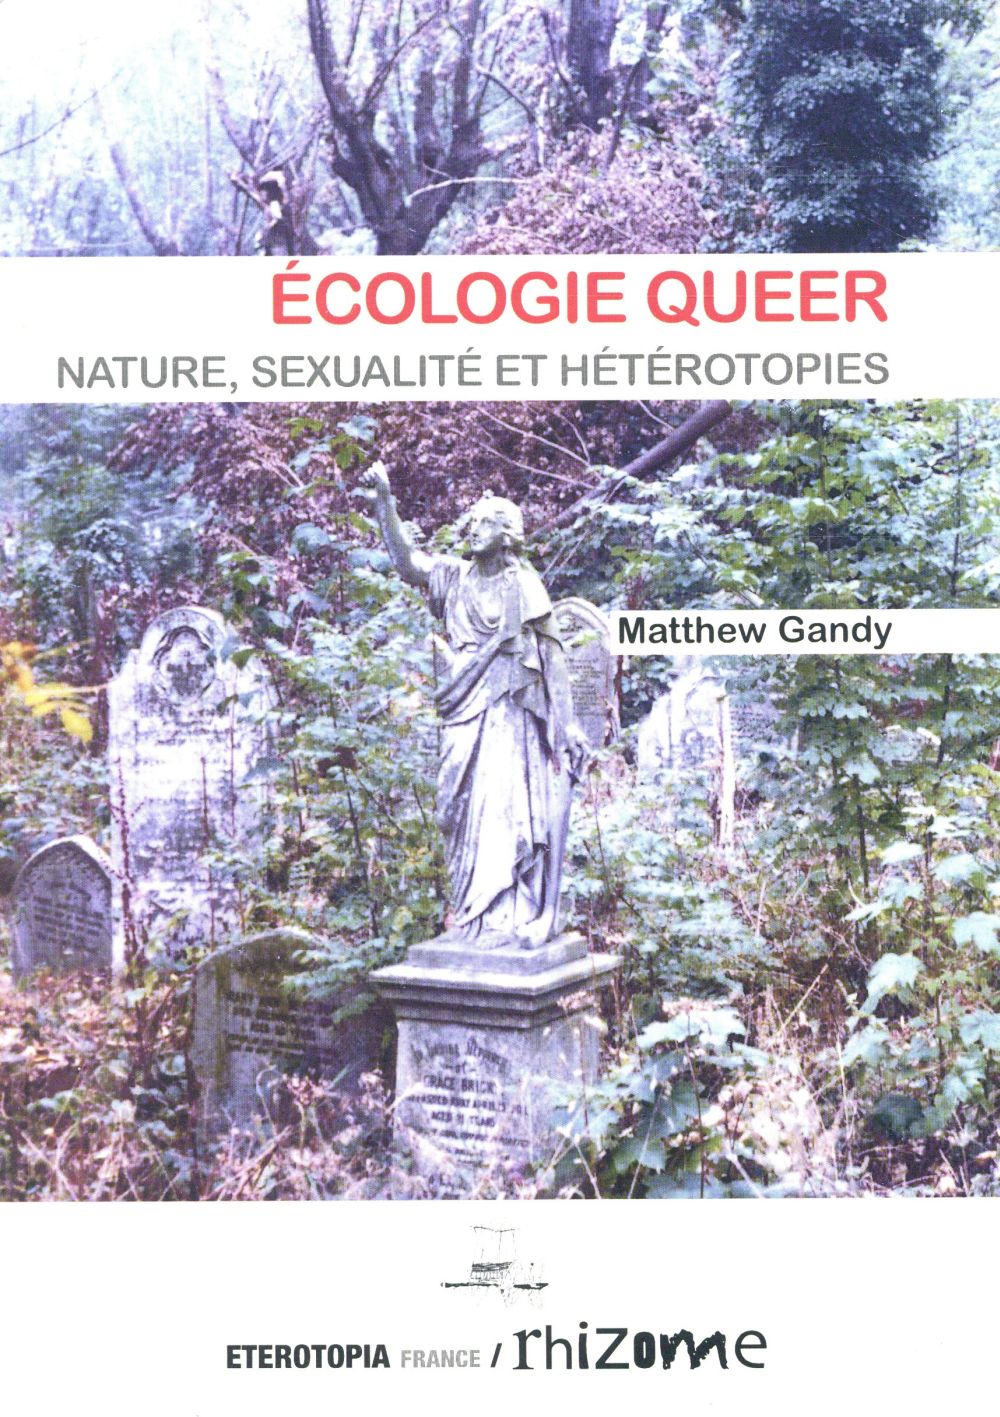 ECOLOGIE QUEER, NATURE, SEXUALITE ET HETEROTOPIE - NATURE, SEXUALITE ET HETEROTOPIES